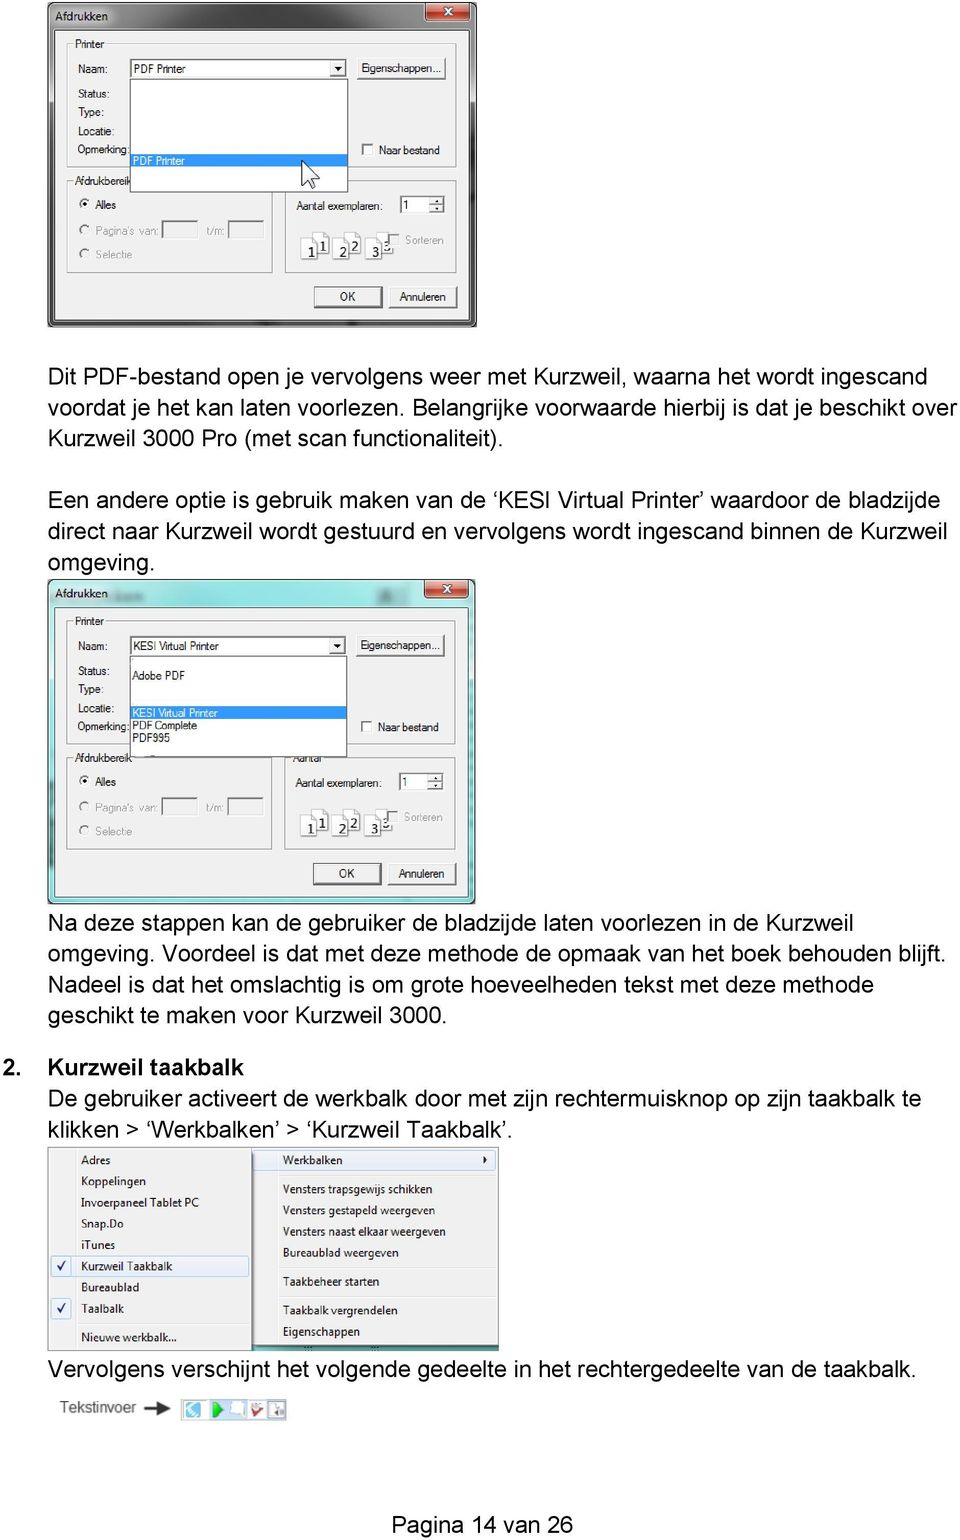 Een andere optie is gebruik maken van de KESI Virtual Printer waardoor de bladzijde direct naar Kurzweil wordt gestuurd en vervolgens wordt ingescand binnen de Kurzweil omgeving.